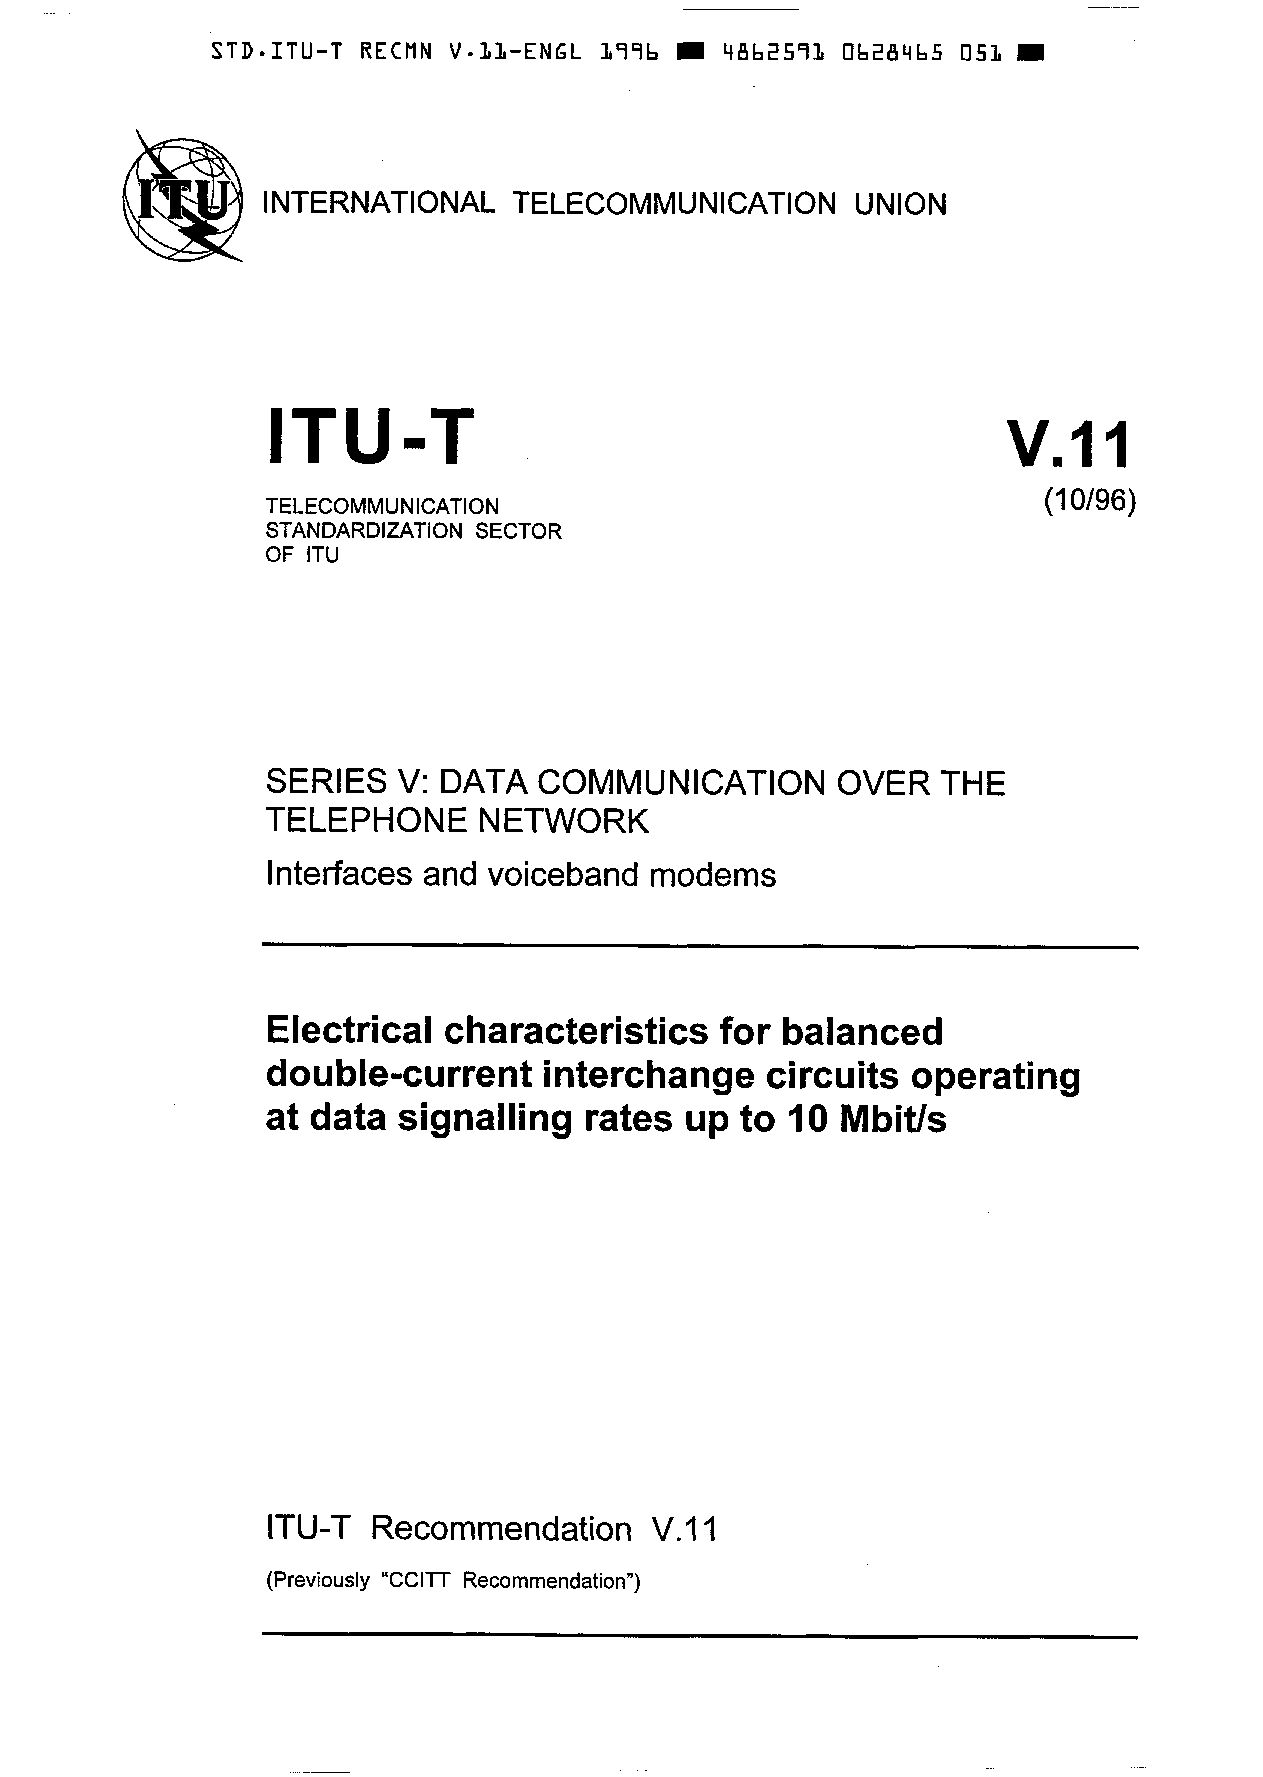 ITU-T V.11-1996